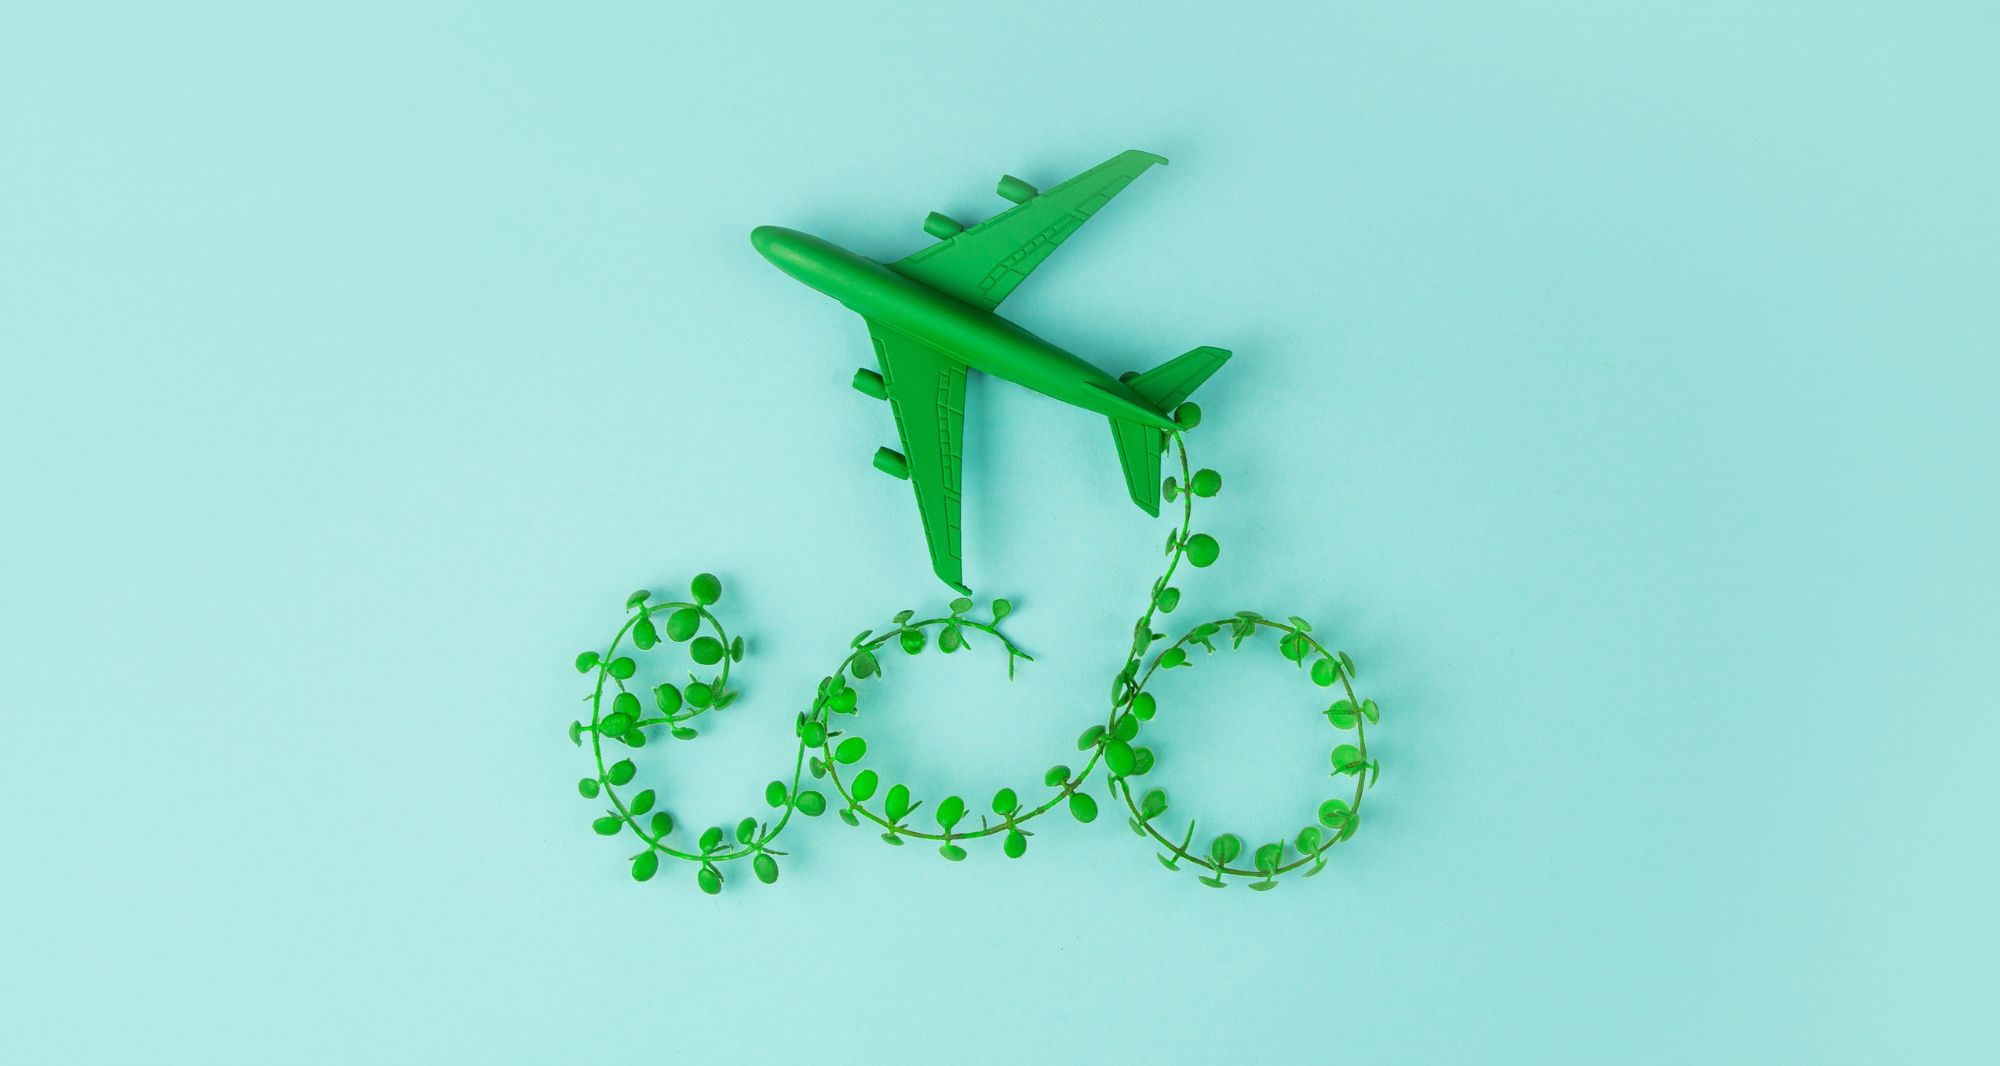 tourisme vert - avion vert avec un trajet en forme du mot éco